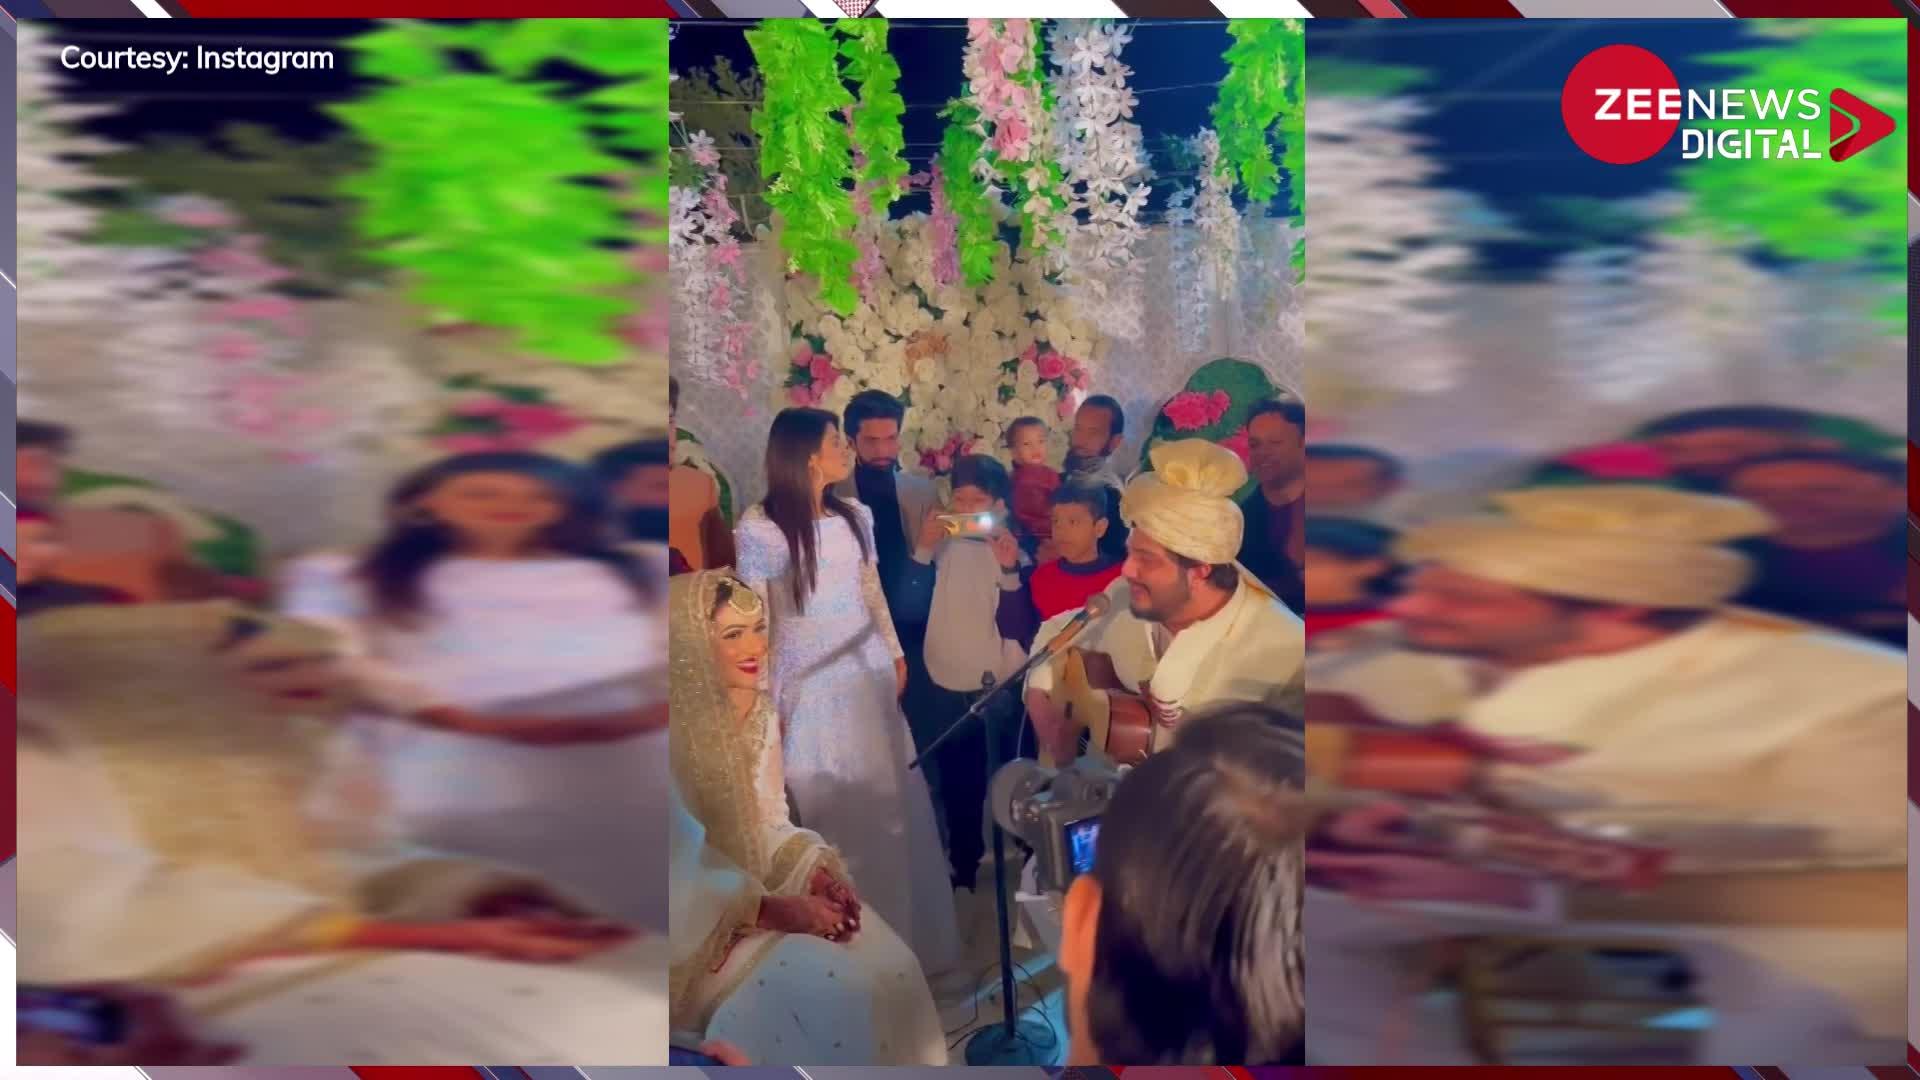 गिटार बचाते हुए पाकिस्तानी दूल्हे ने गाया दुल्हन के सामने बॉलीवुड गाना, देखते रह गए मेहमान, वीडियो हुआ वायरल